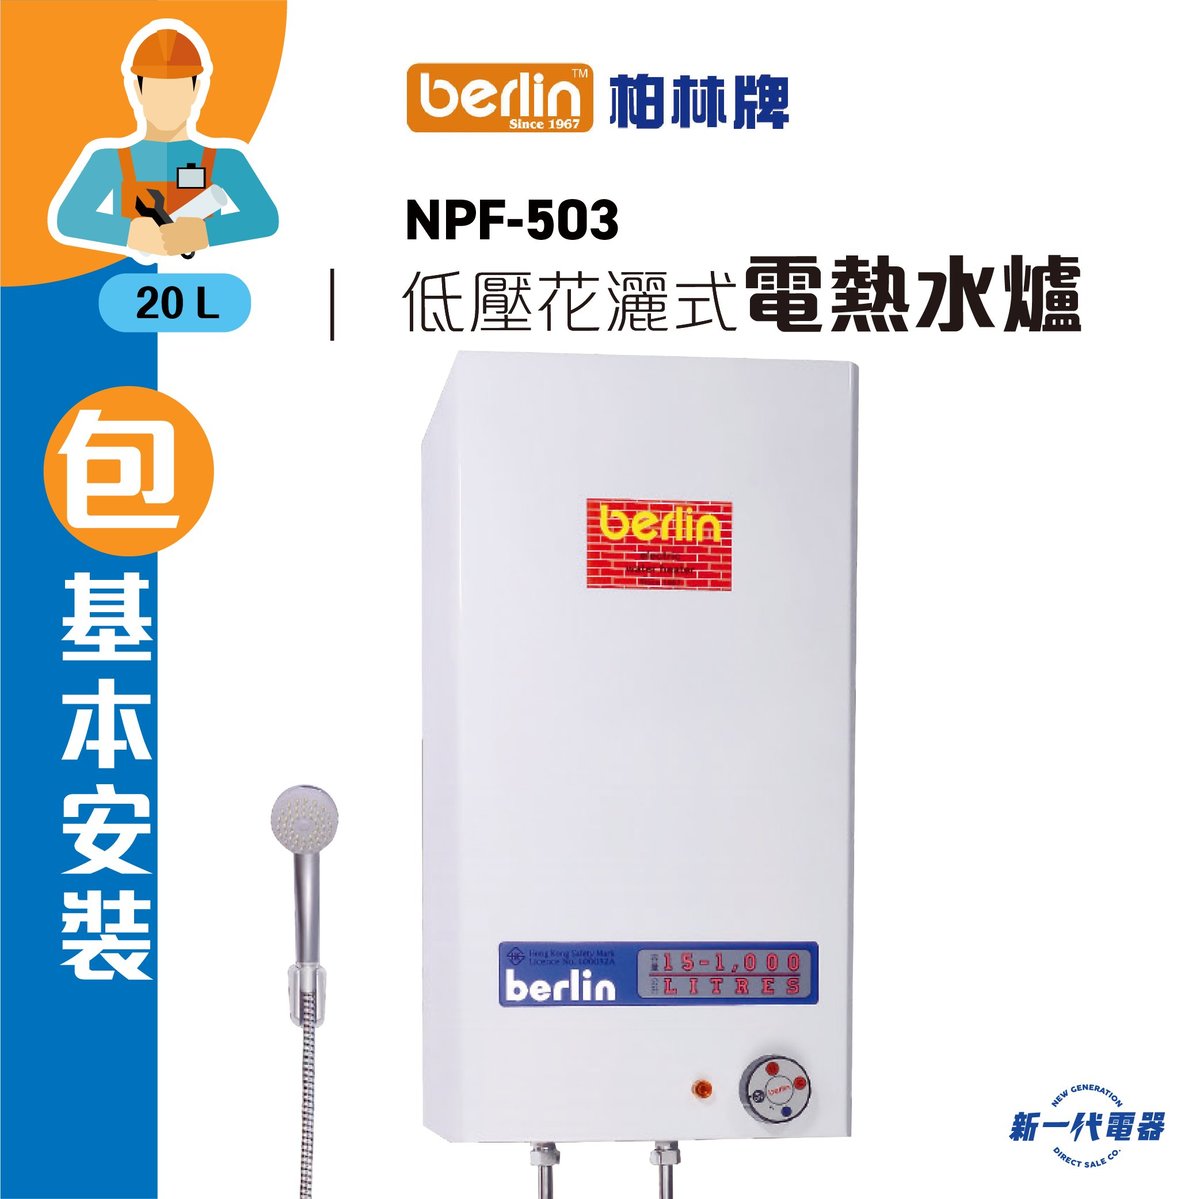 NPF503 (連基本安裝) -20公升 低壓花灑式 儲水電熱水爐 ( NPF-503)